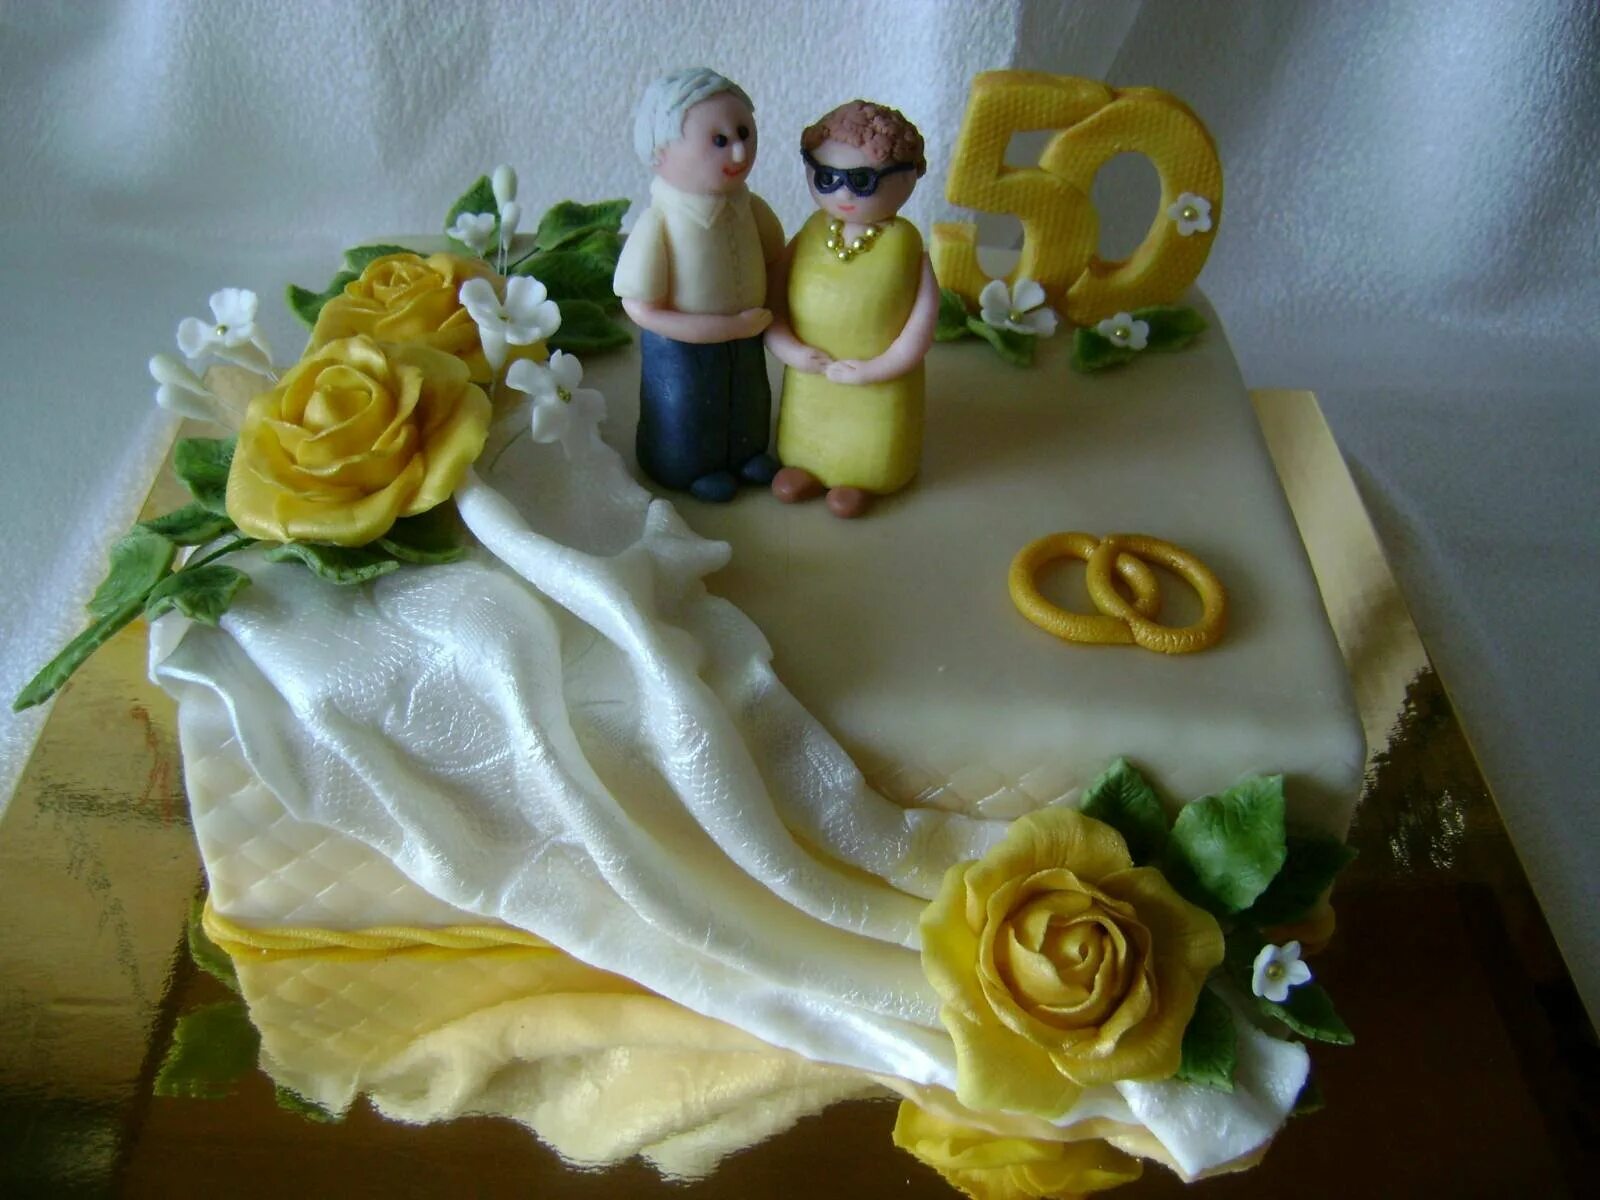 50 лет совместной жизни родителям. Торт на золотую свадьбу. Украшение торта на золотую свадьбу. Торт на юбилей свадьбы. Торт на золотую свадьбу родителям.